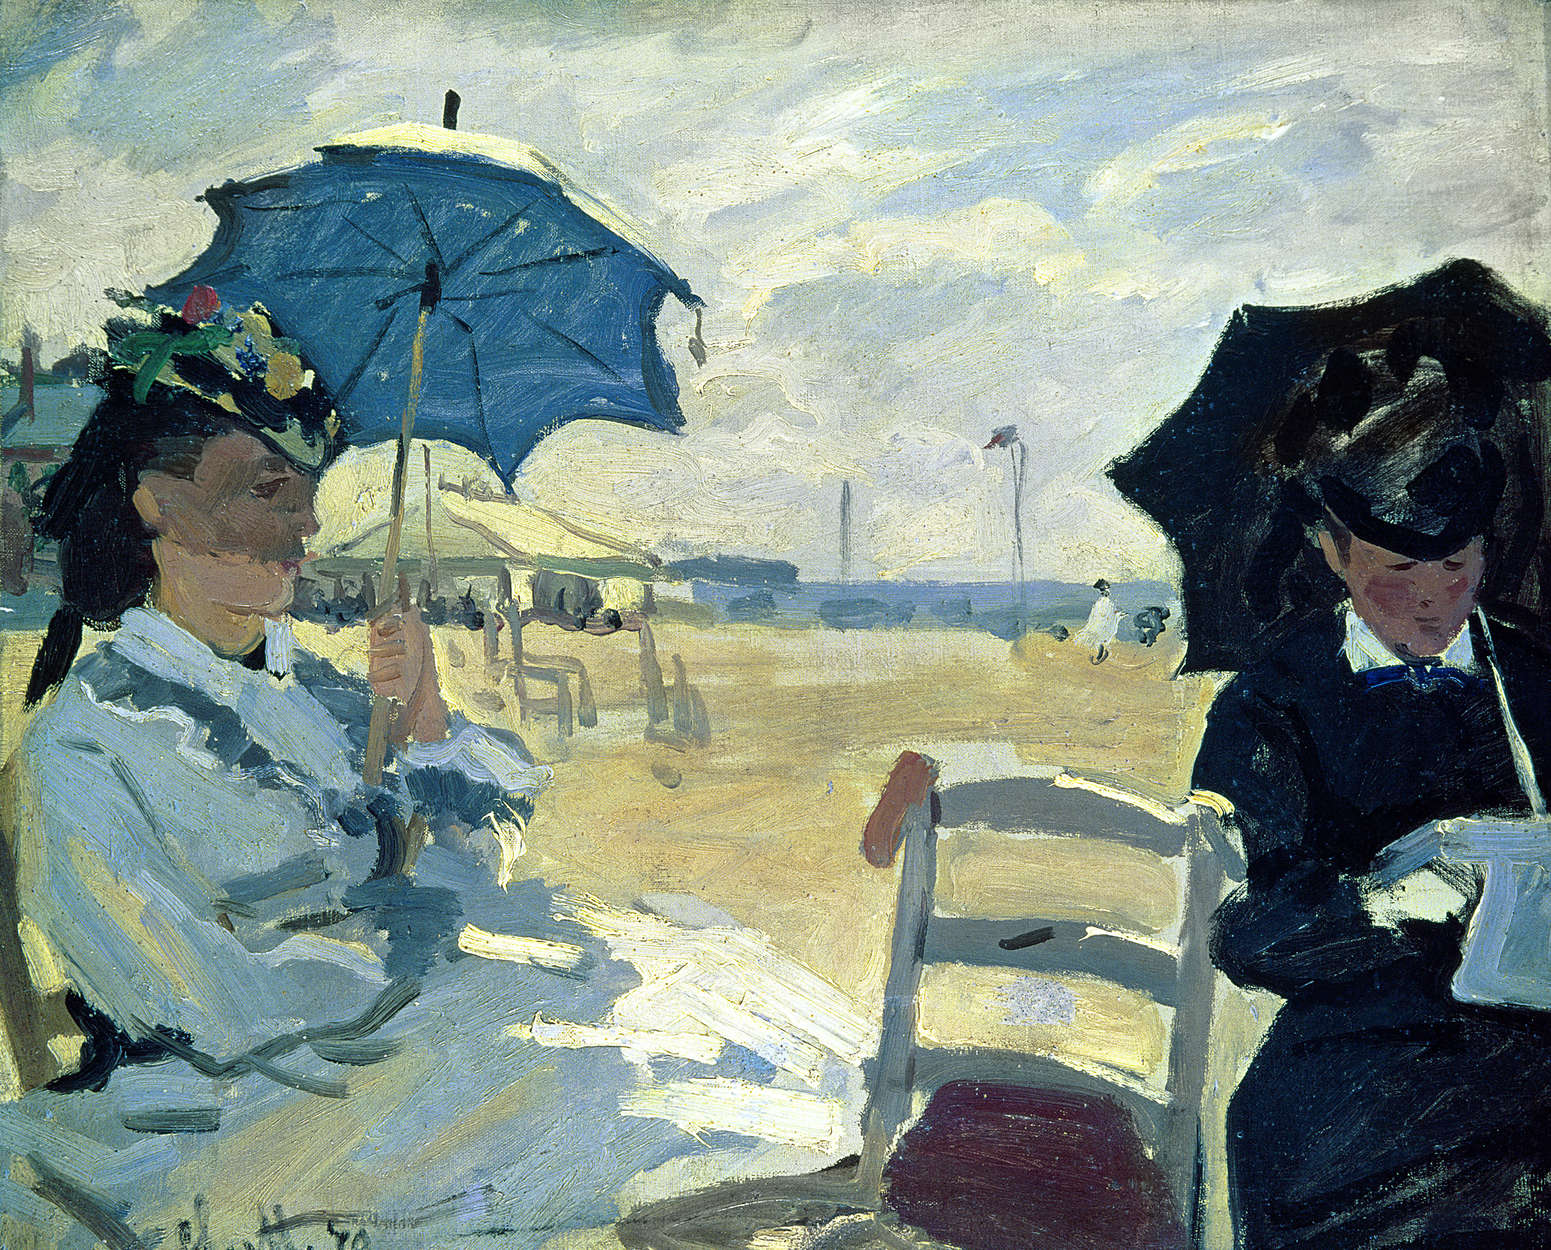             Fototapete "Der Strand Trouville" von Claude Monet
        